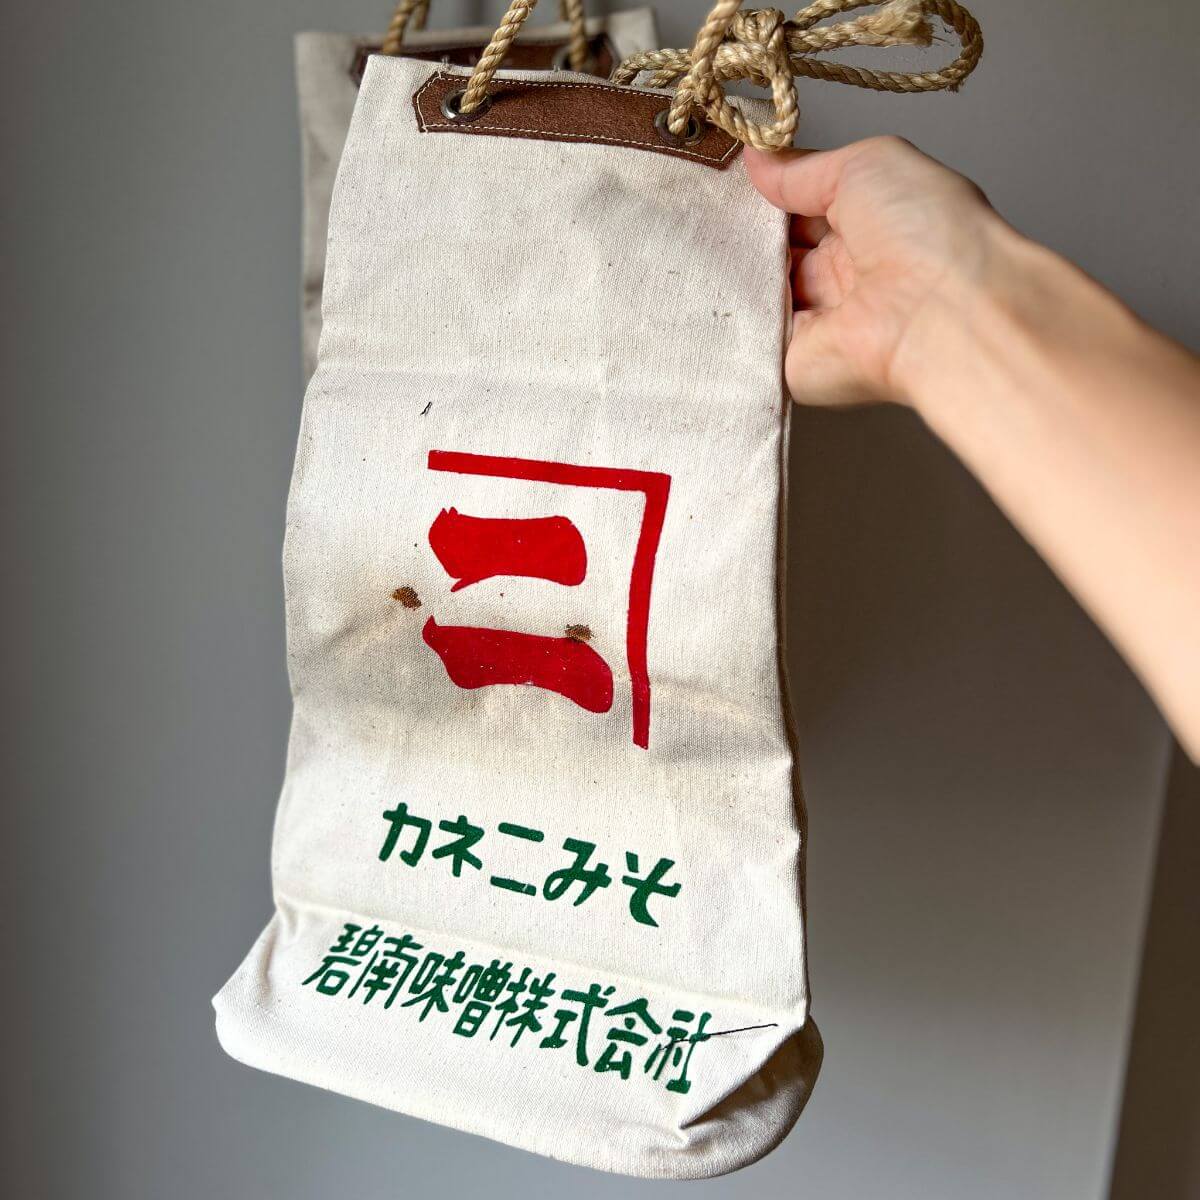 Vintage Japanese Soy Sauce Bottle Bag